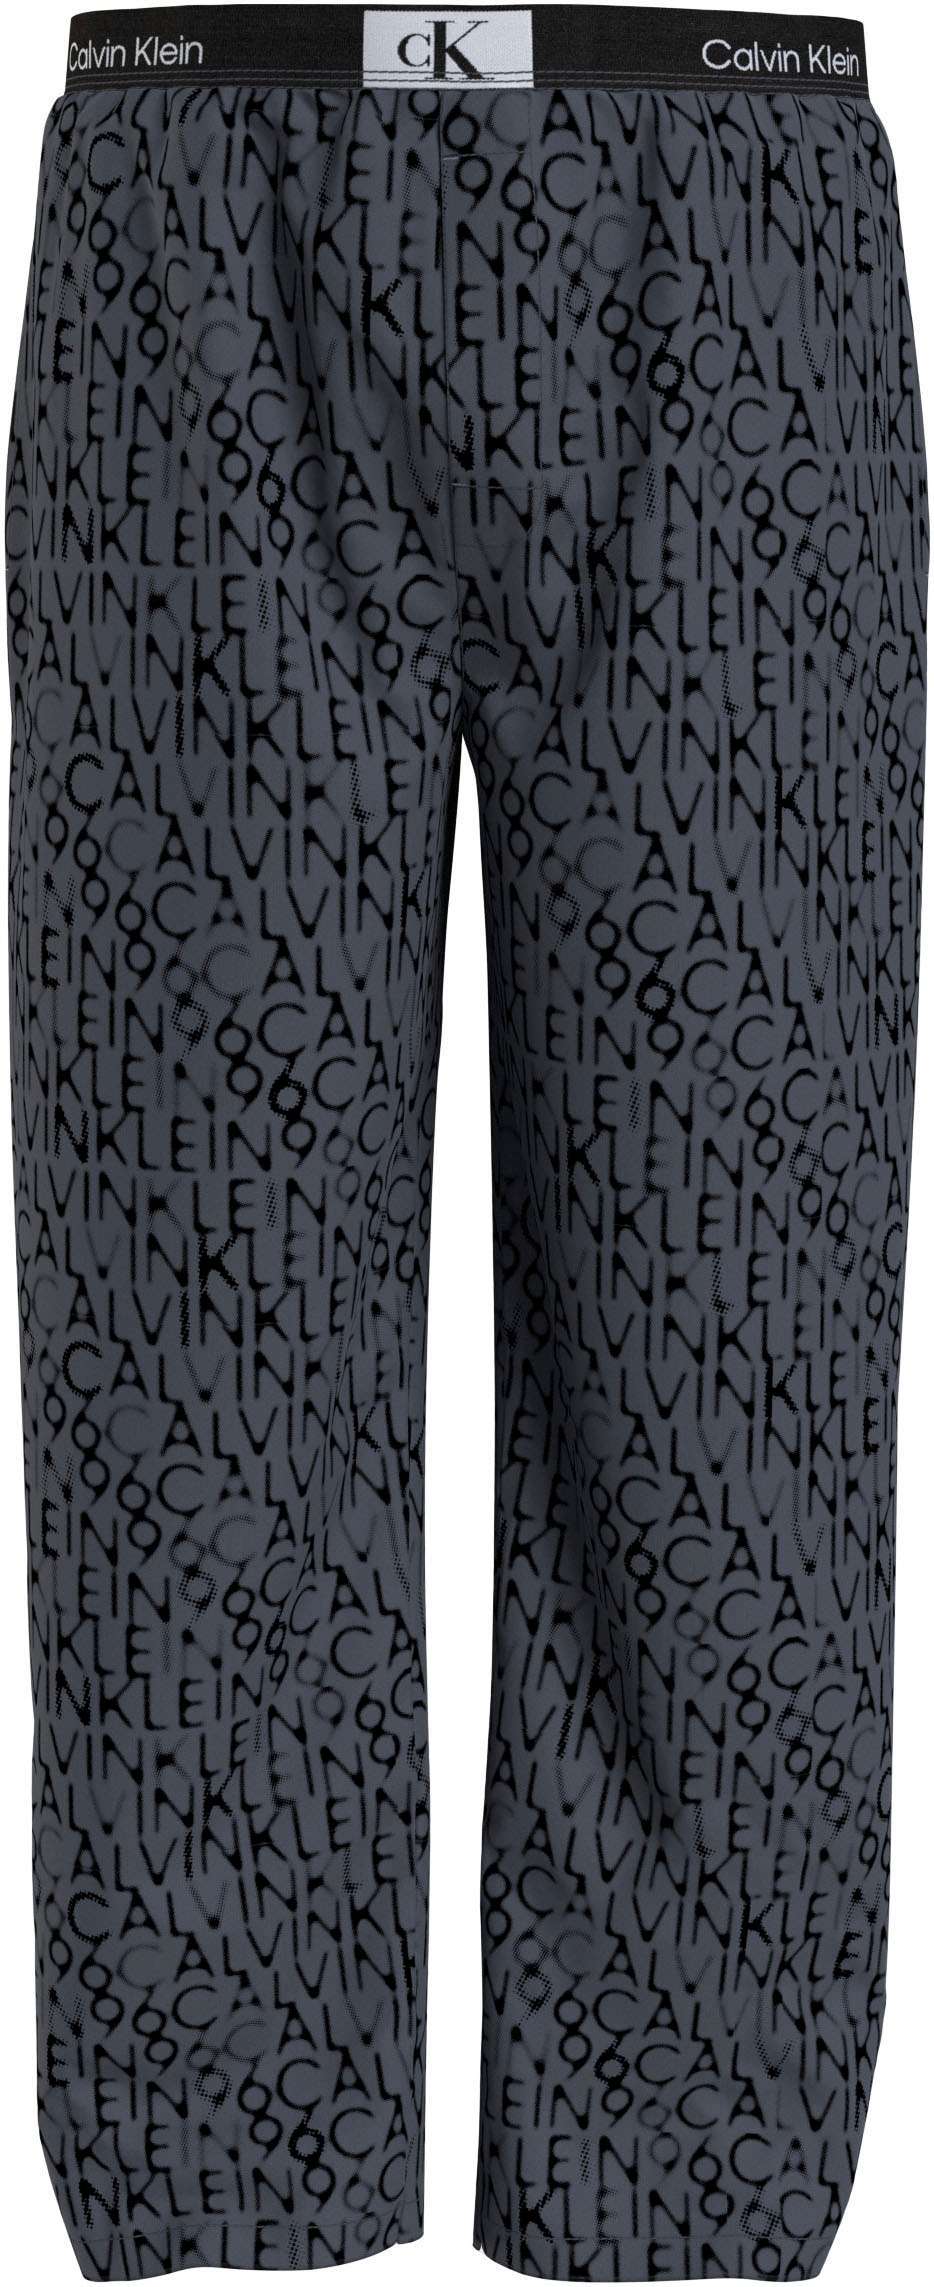 Пижамные брюки с принтом по всей поверхности